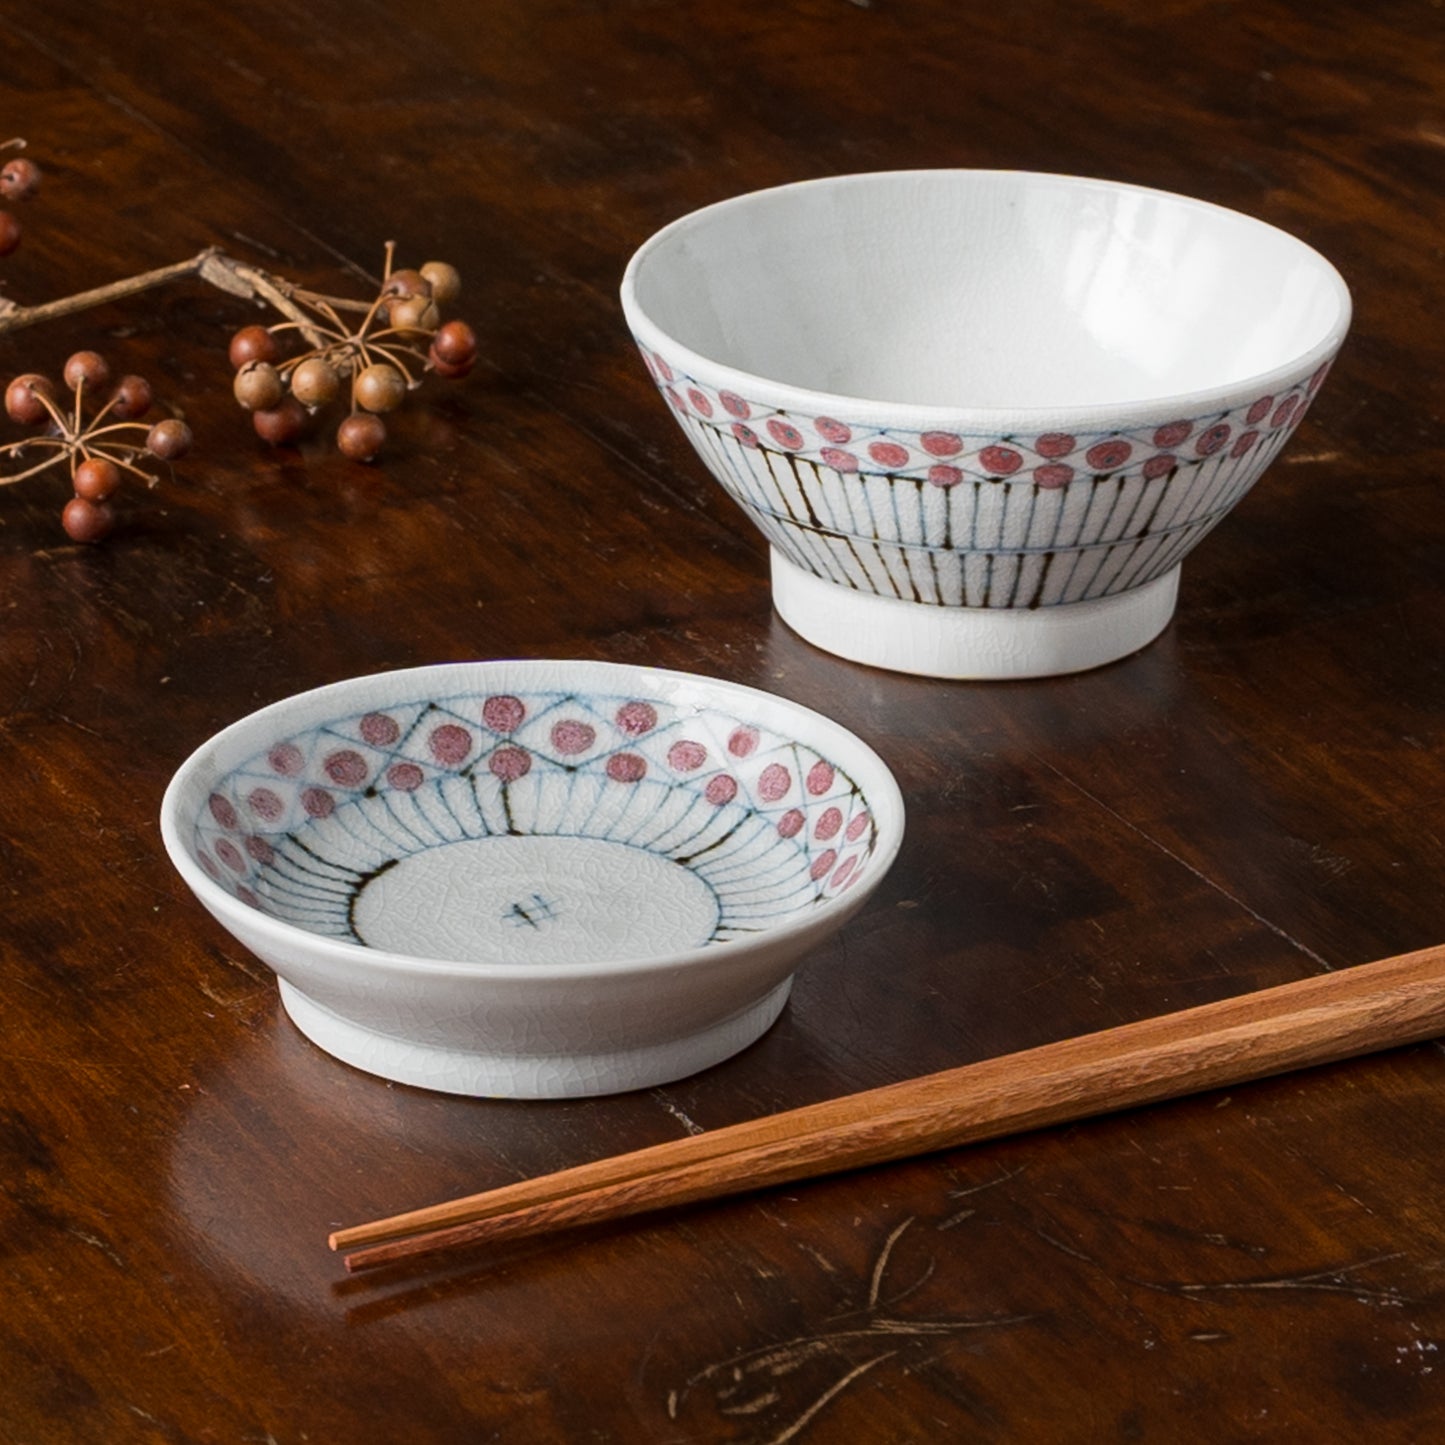 温もりのある食卓にしてくれる砥部焼陶彩窯の花垣文めし碗と3.5寸皿